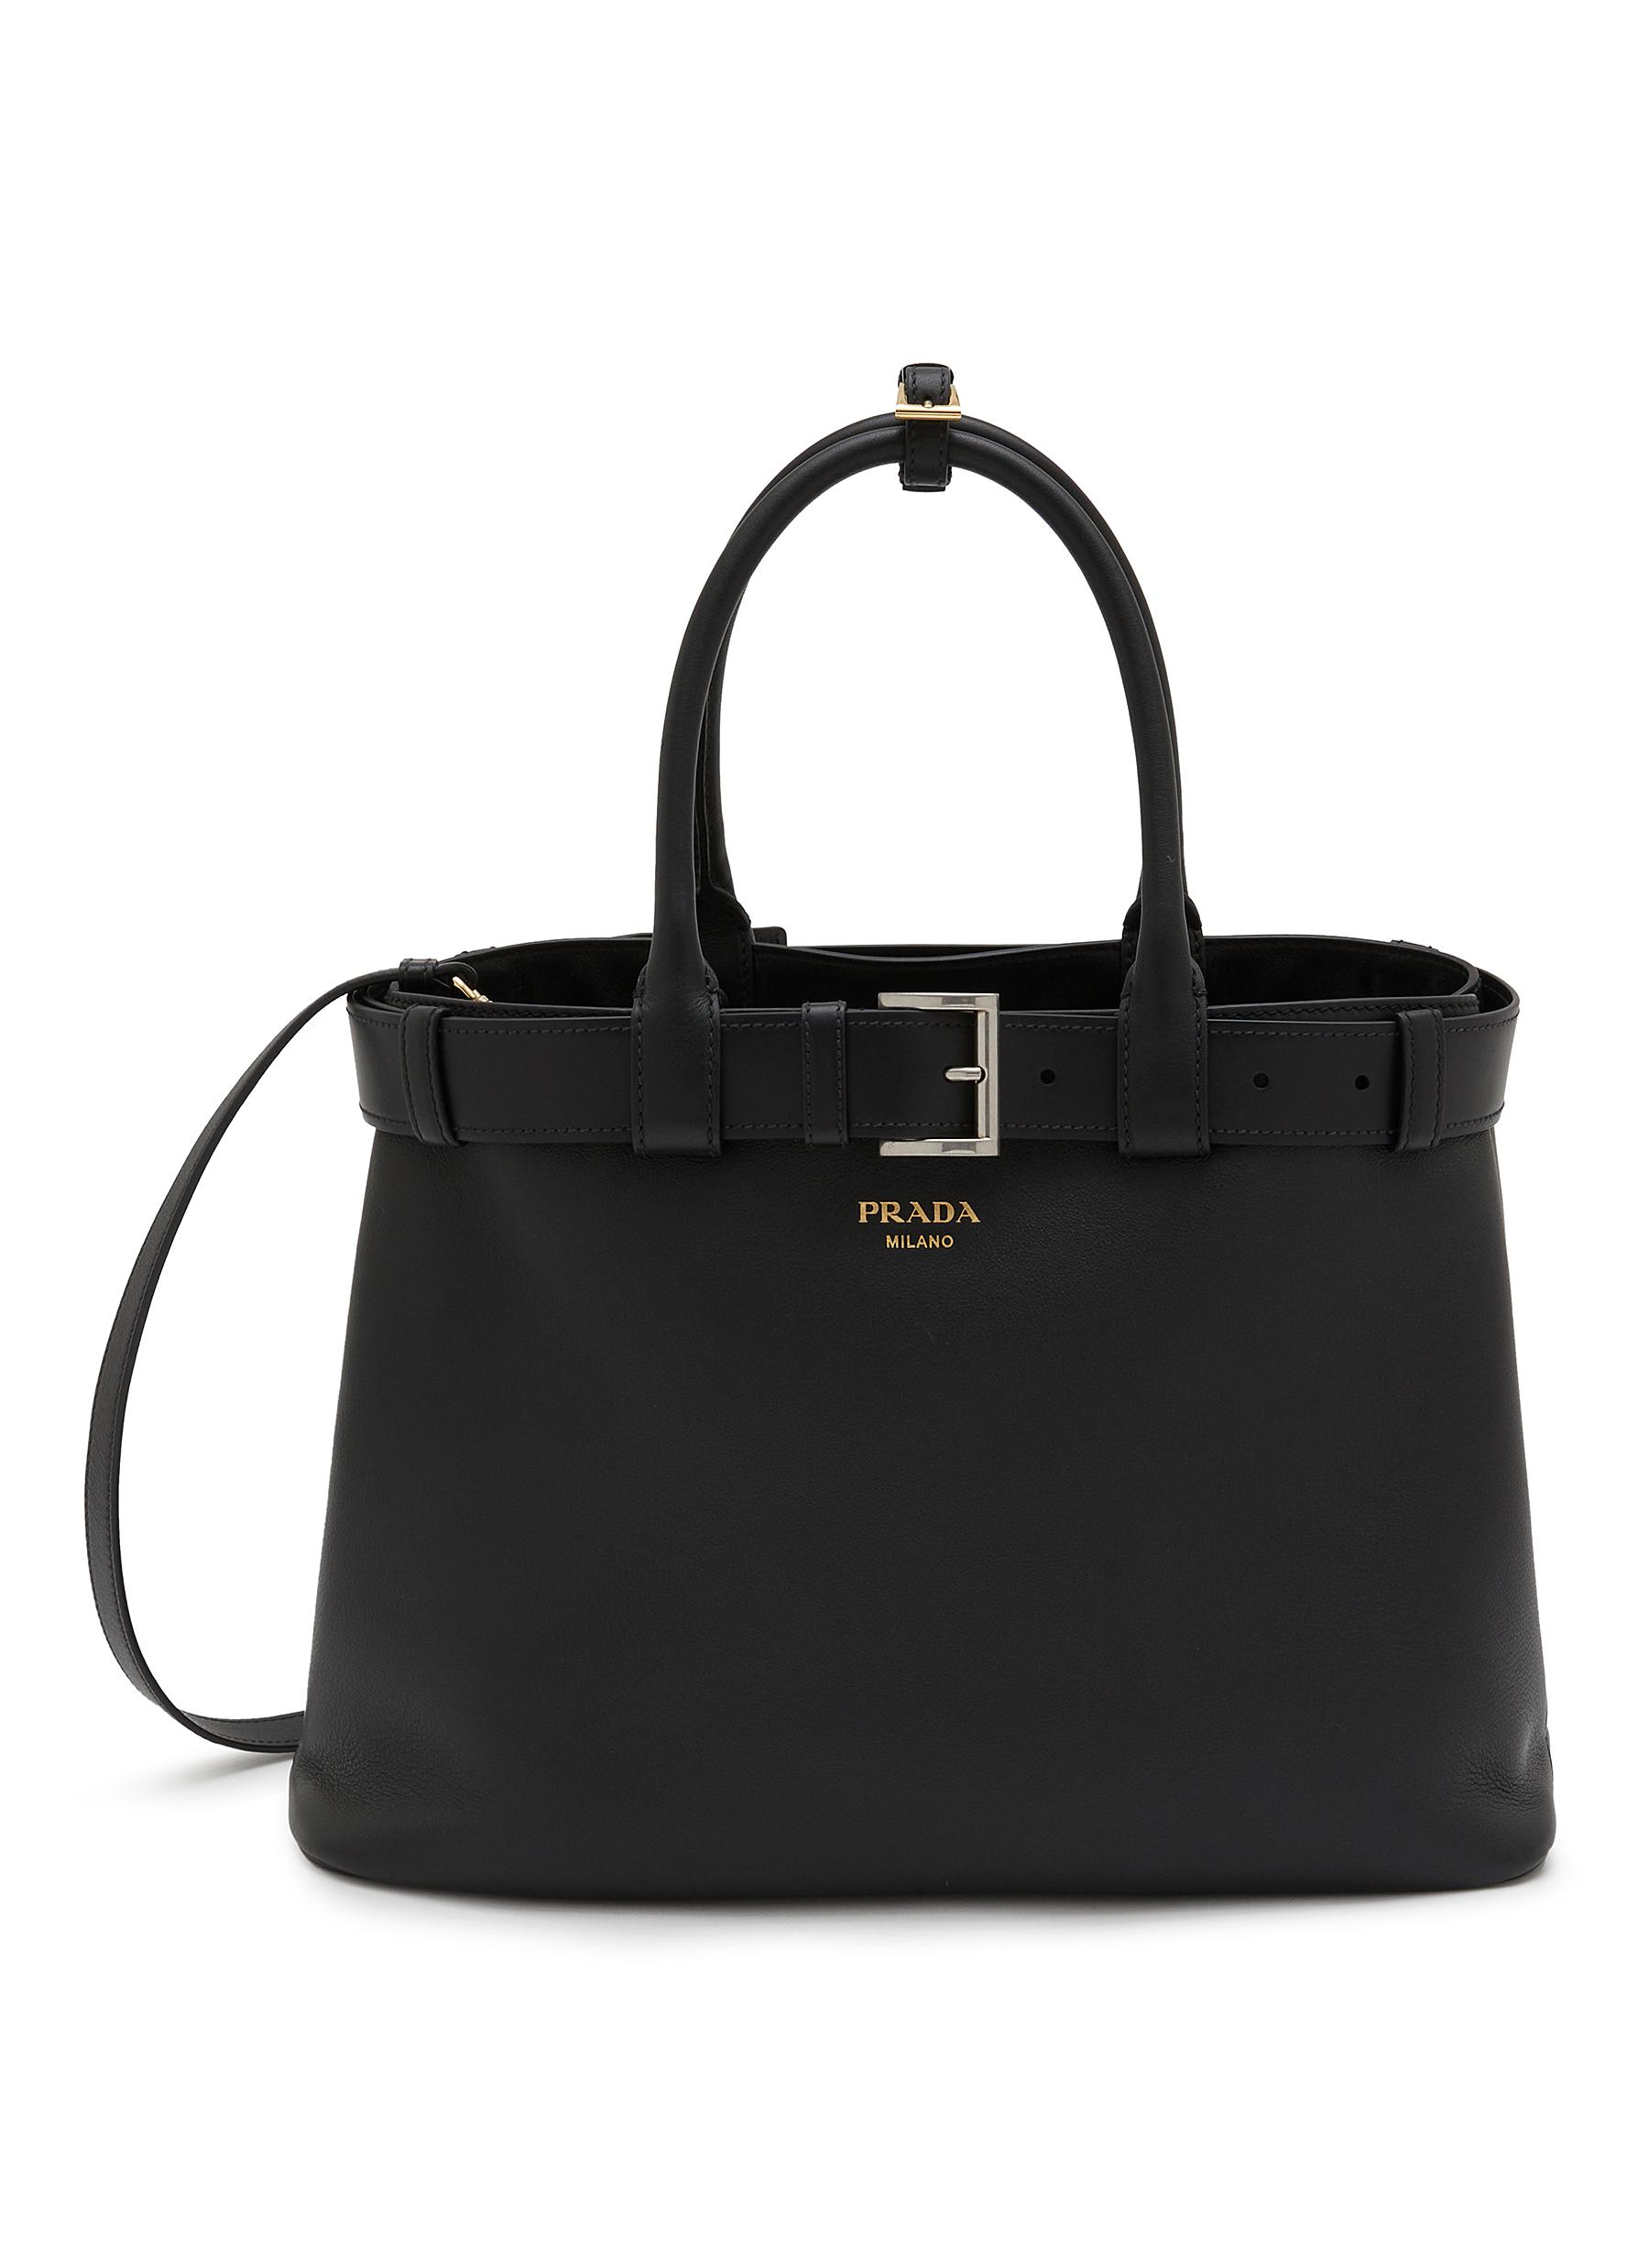 PRADA | Large Leather Shoulder Bag | Women | Lane Crawford